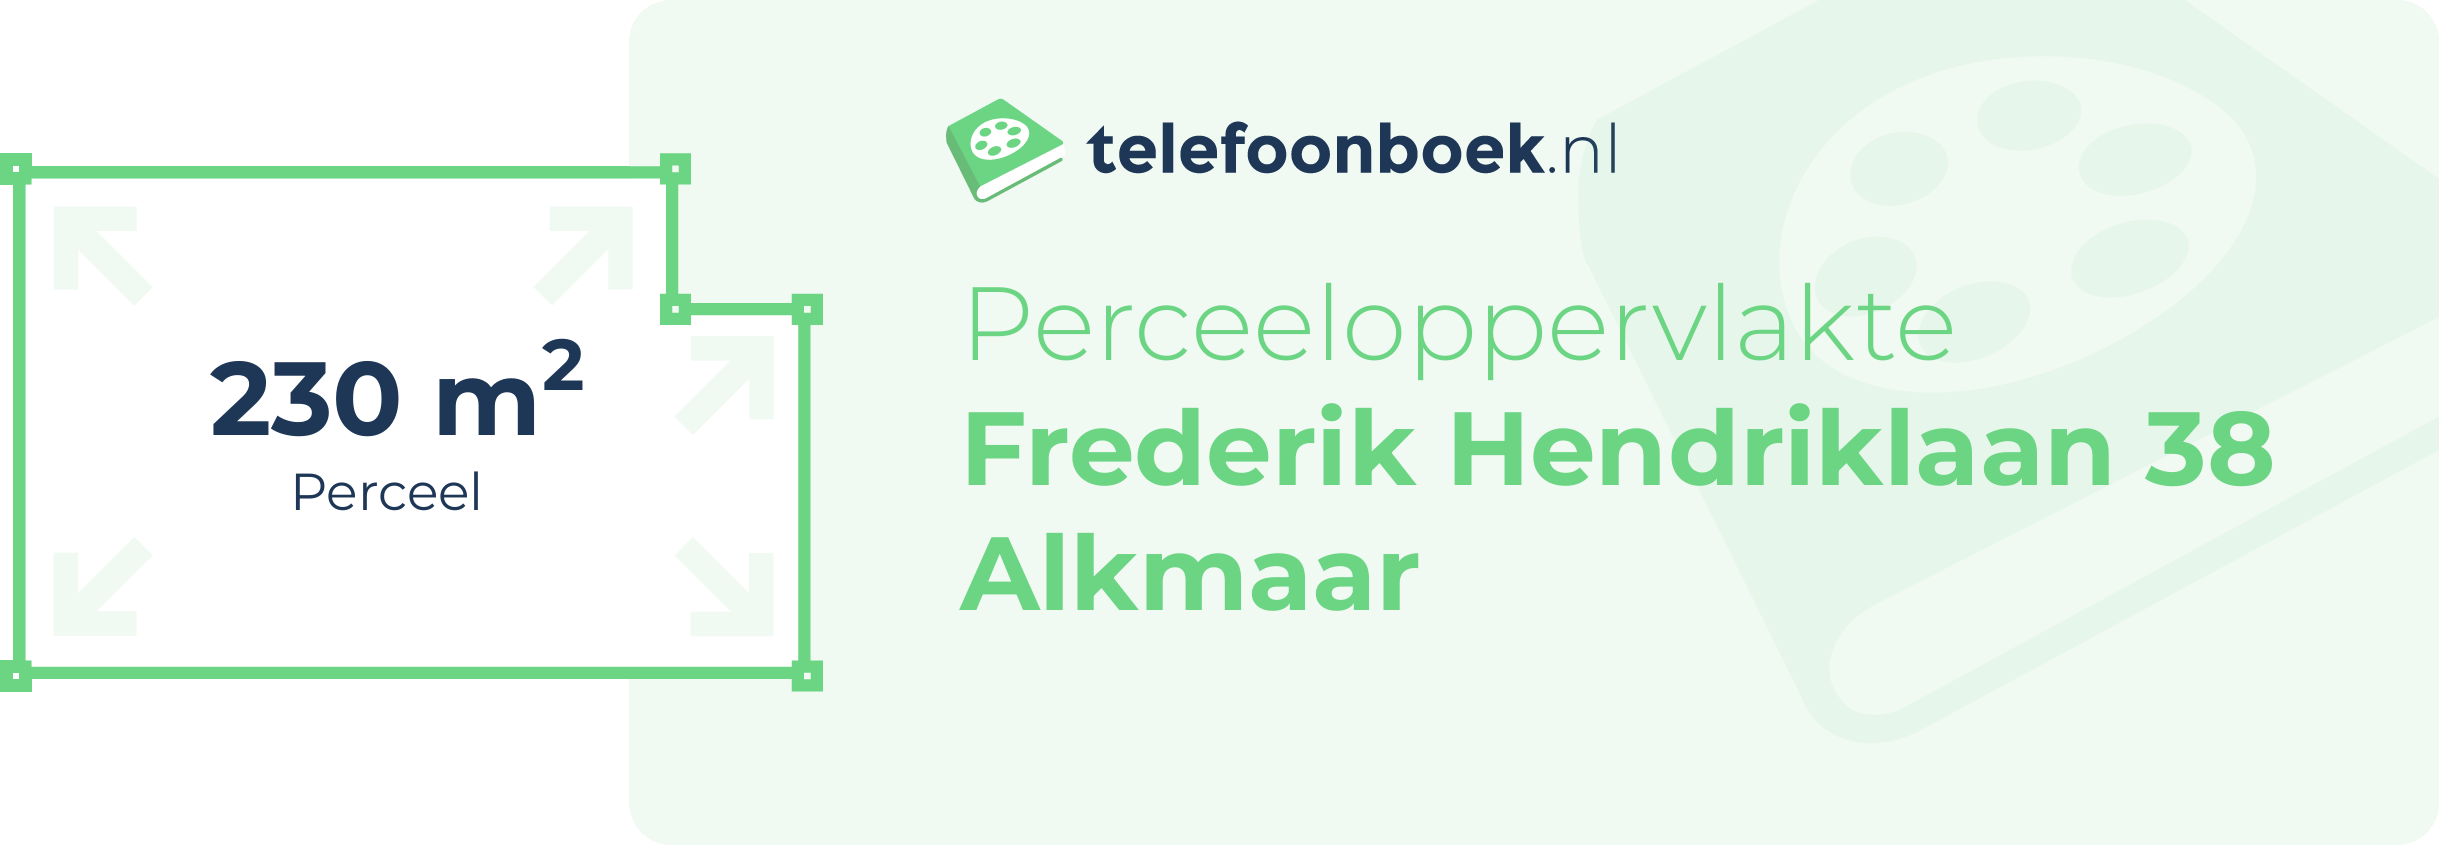 Perceeloppervlakte Frederik Hendriklaan 38 Alkmaar